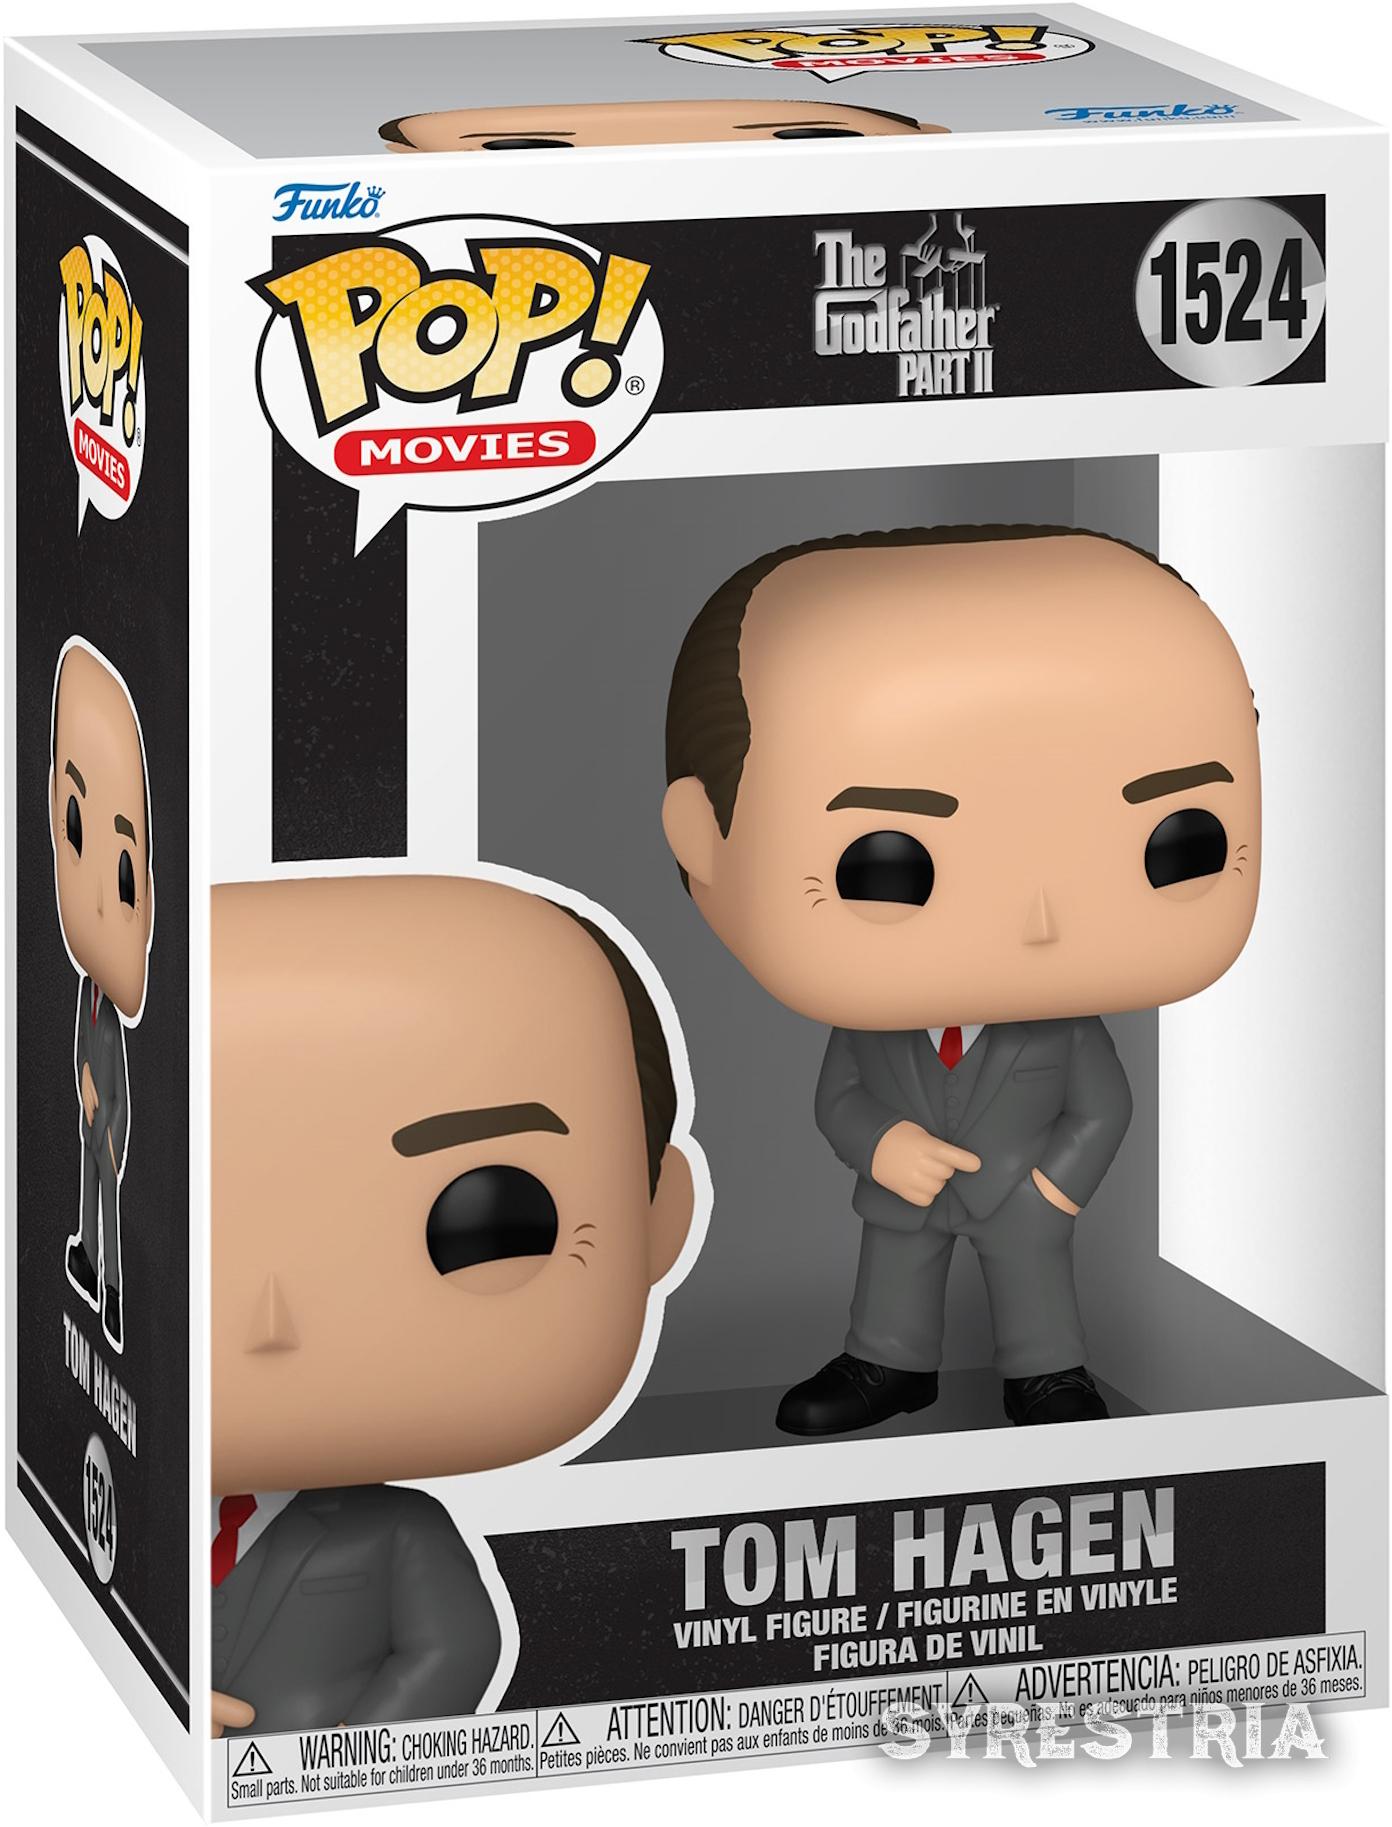 The Godfather Part 2 - Tom Hagen 1524  - Funko Pop! Vinyl Figur